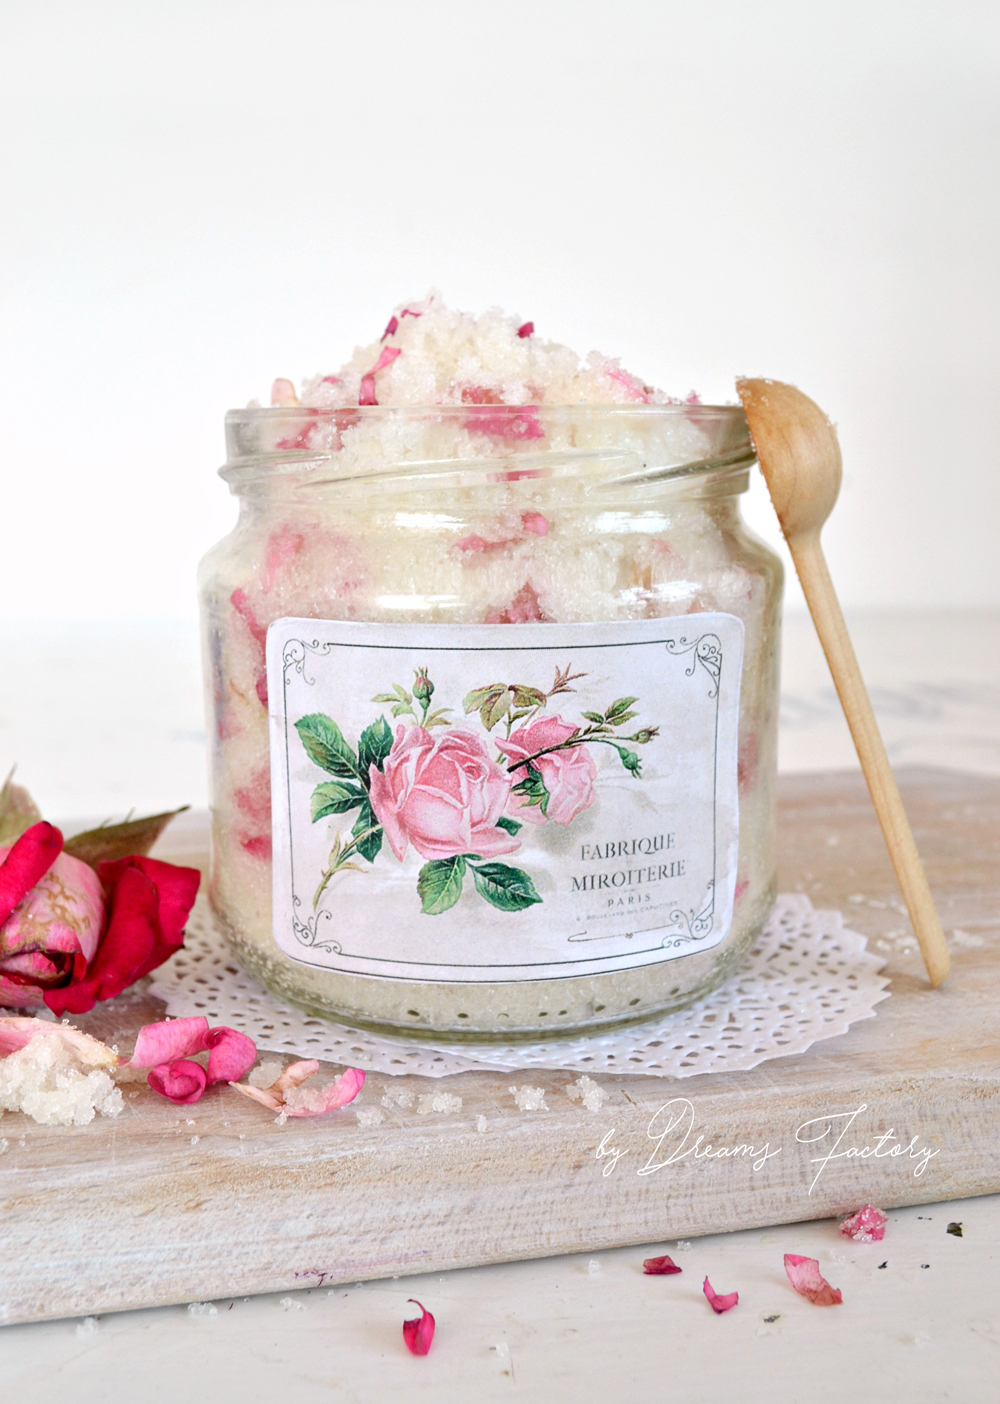 DIY Rose Petal Lavender Sugar Scrub-www.bydreamsfactory.com 